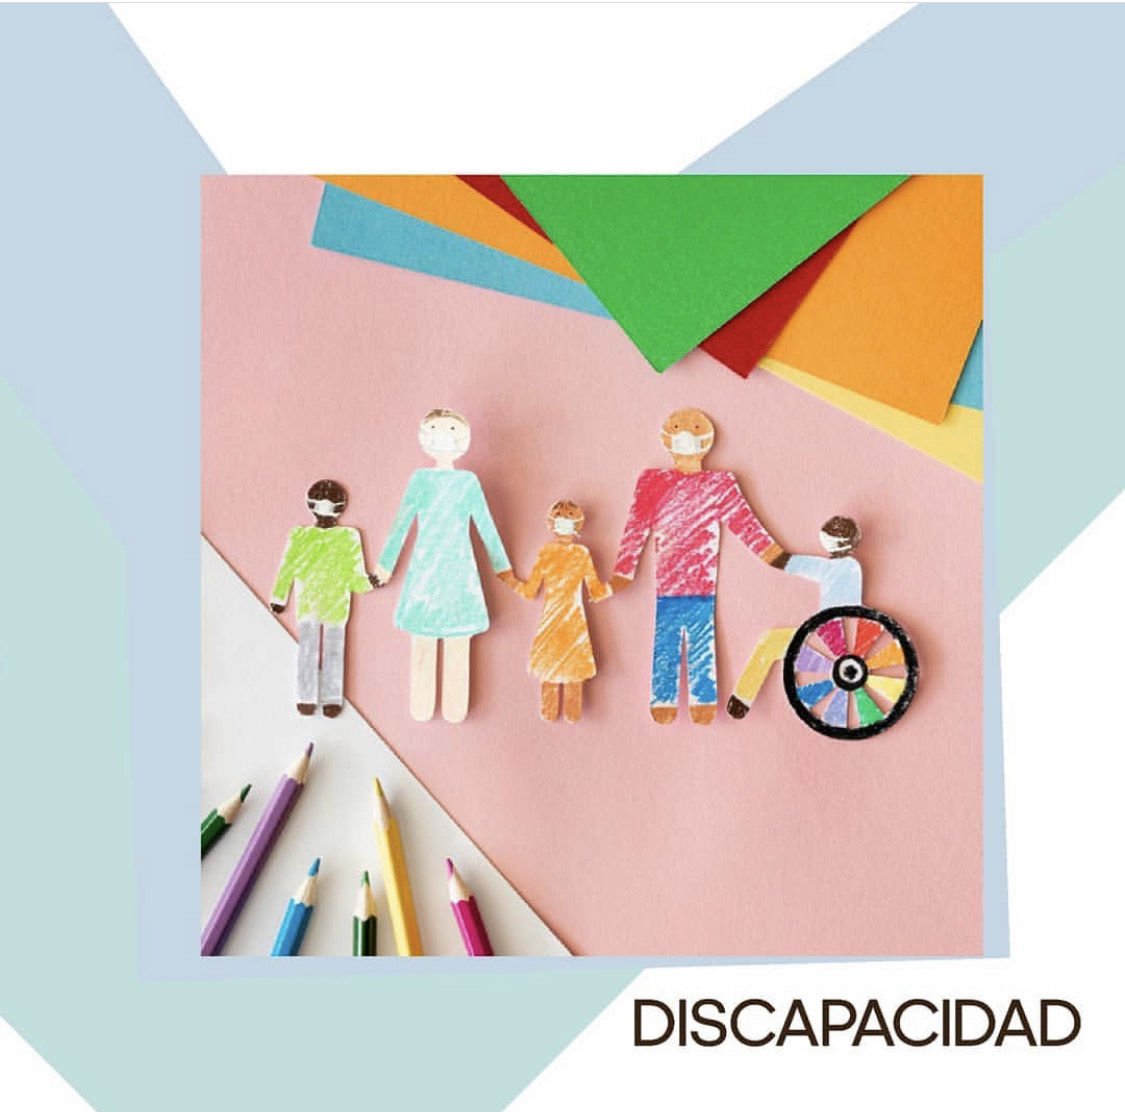 Modelo social de discapacidad. Discapacidad. Diversidad. Inclusion